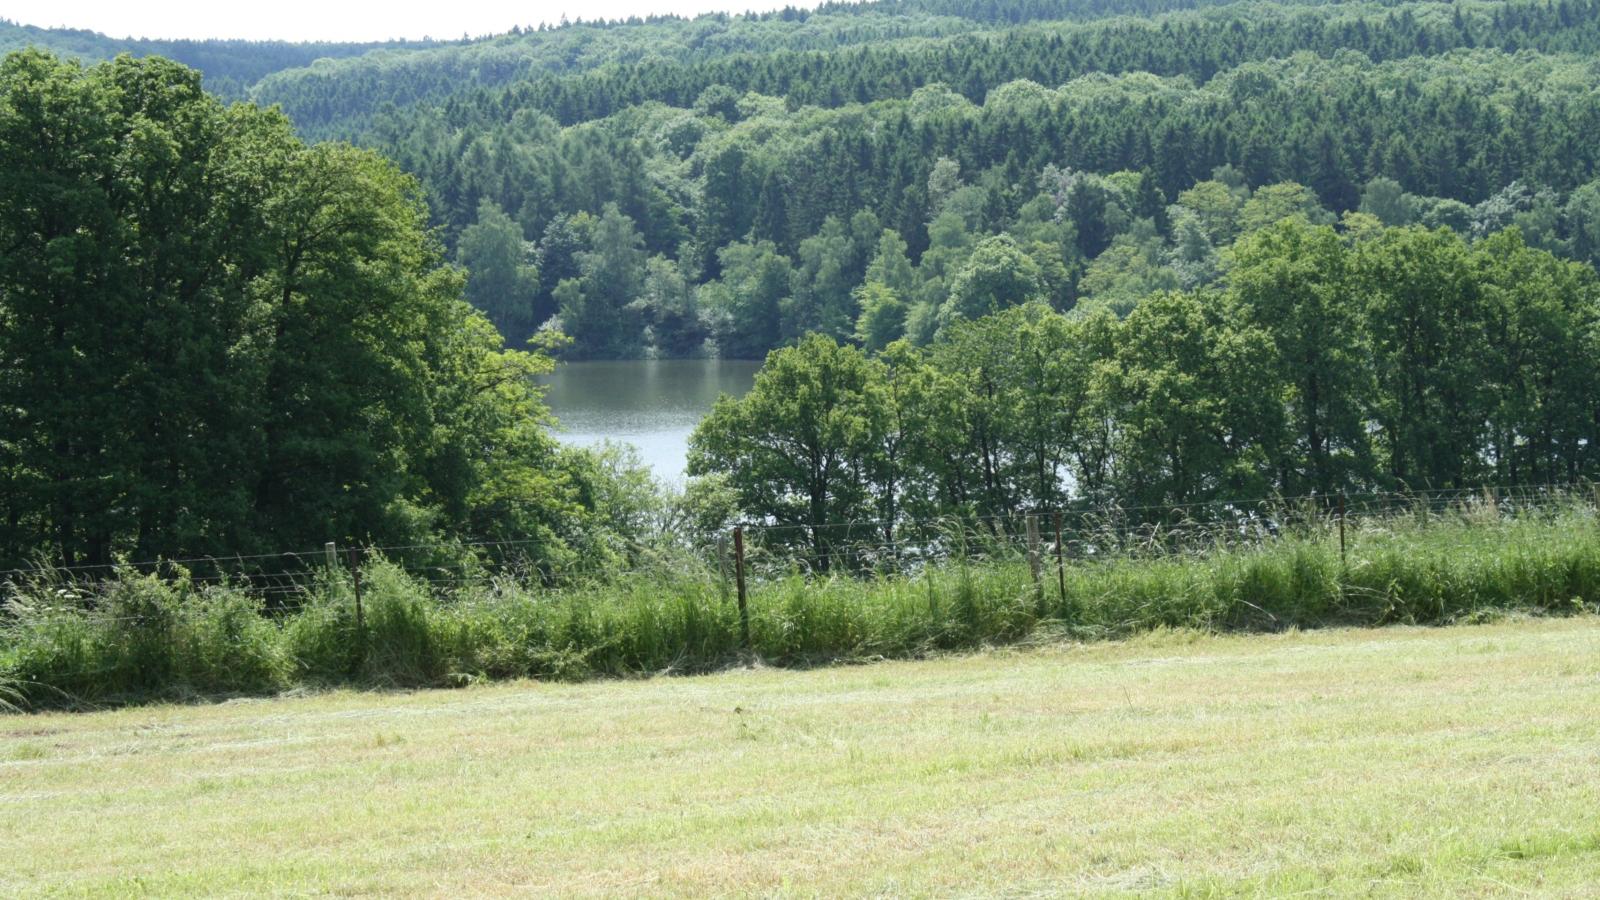 Der Stausee ist in den 1930er Jahren zur Brauchwasser-Versorgung der Euskirchener Tuchindustrie gebaut worden. Der im Wald gelegene See ist heute ein beliebtes Naherholungsgebiet. Ex-Bild-DB-ID: 1190